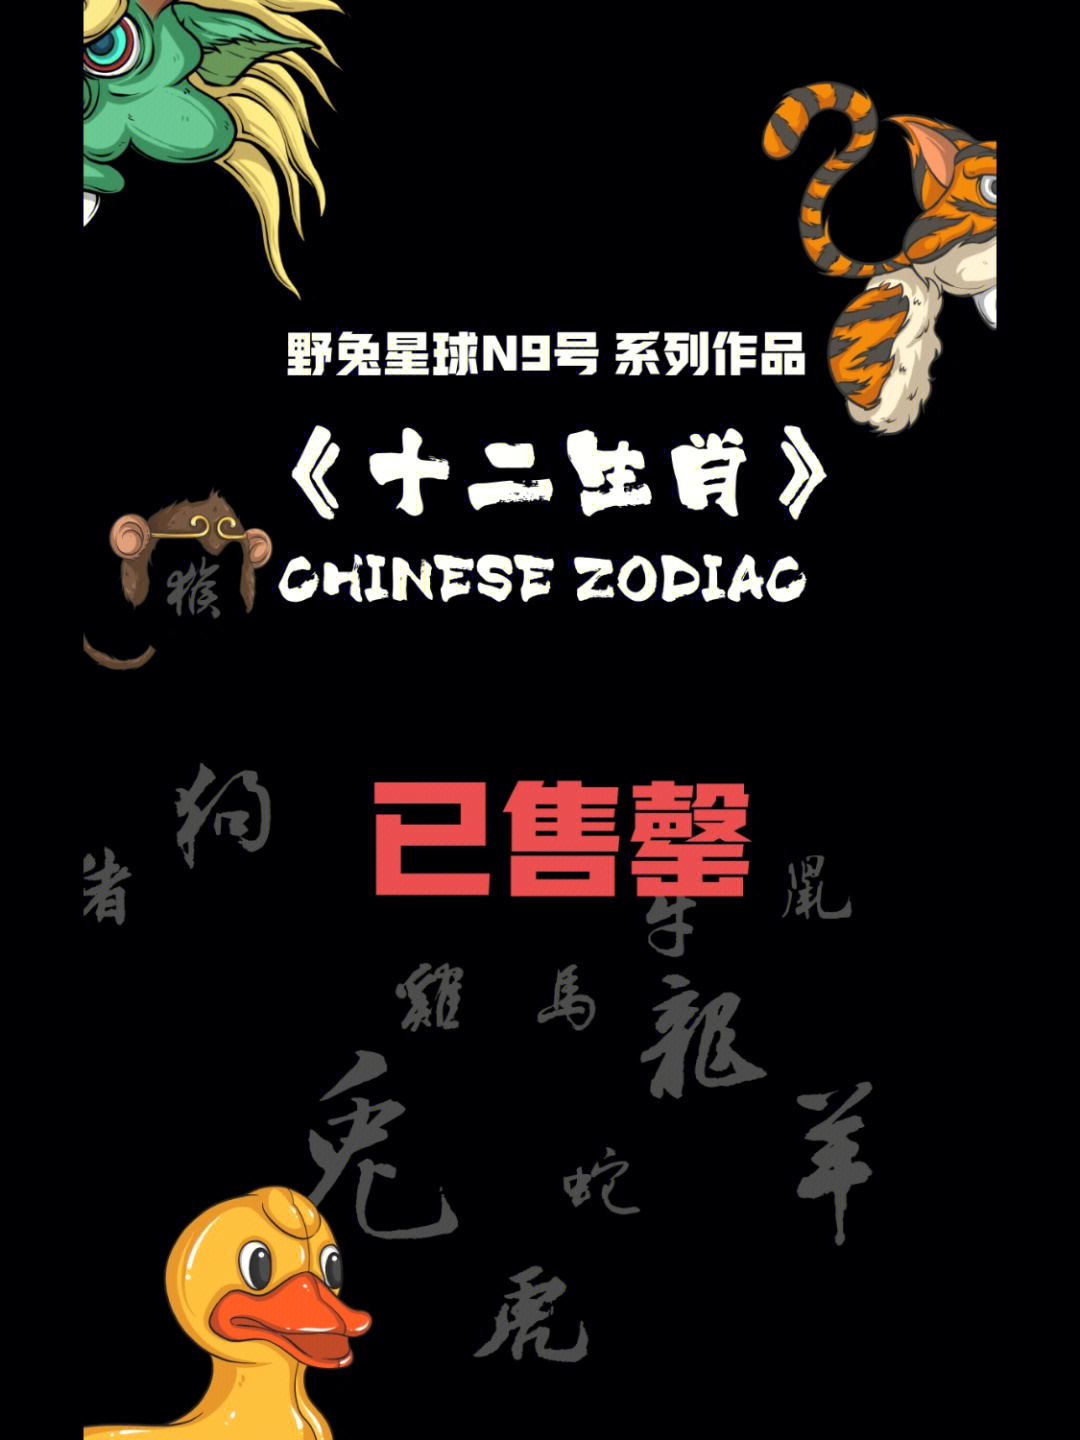 国潮十二生肖是重要的中国民俗文化符号,其形成与原始民族狩猎的